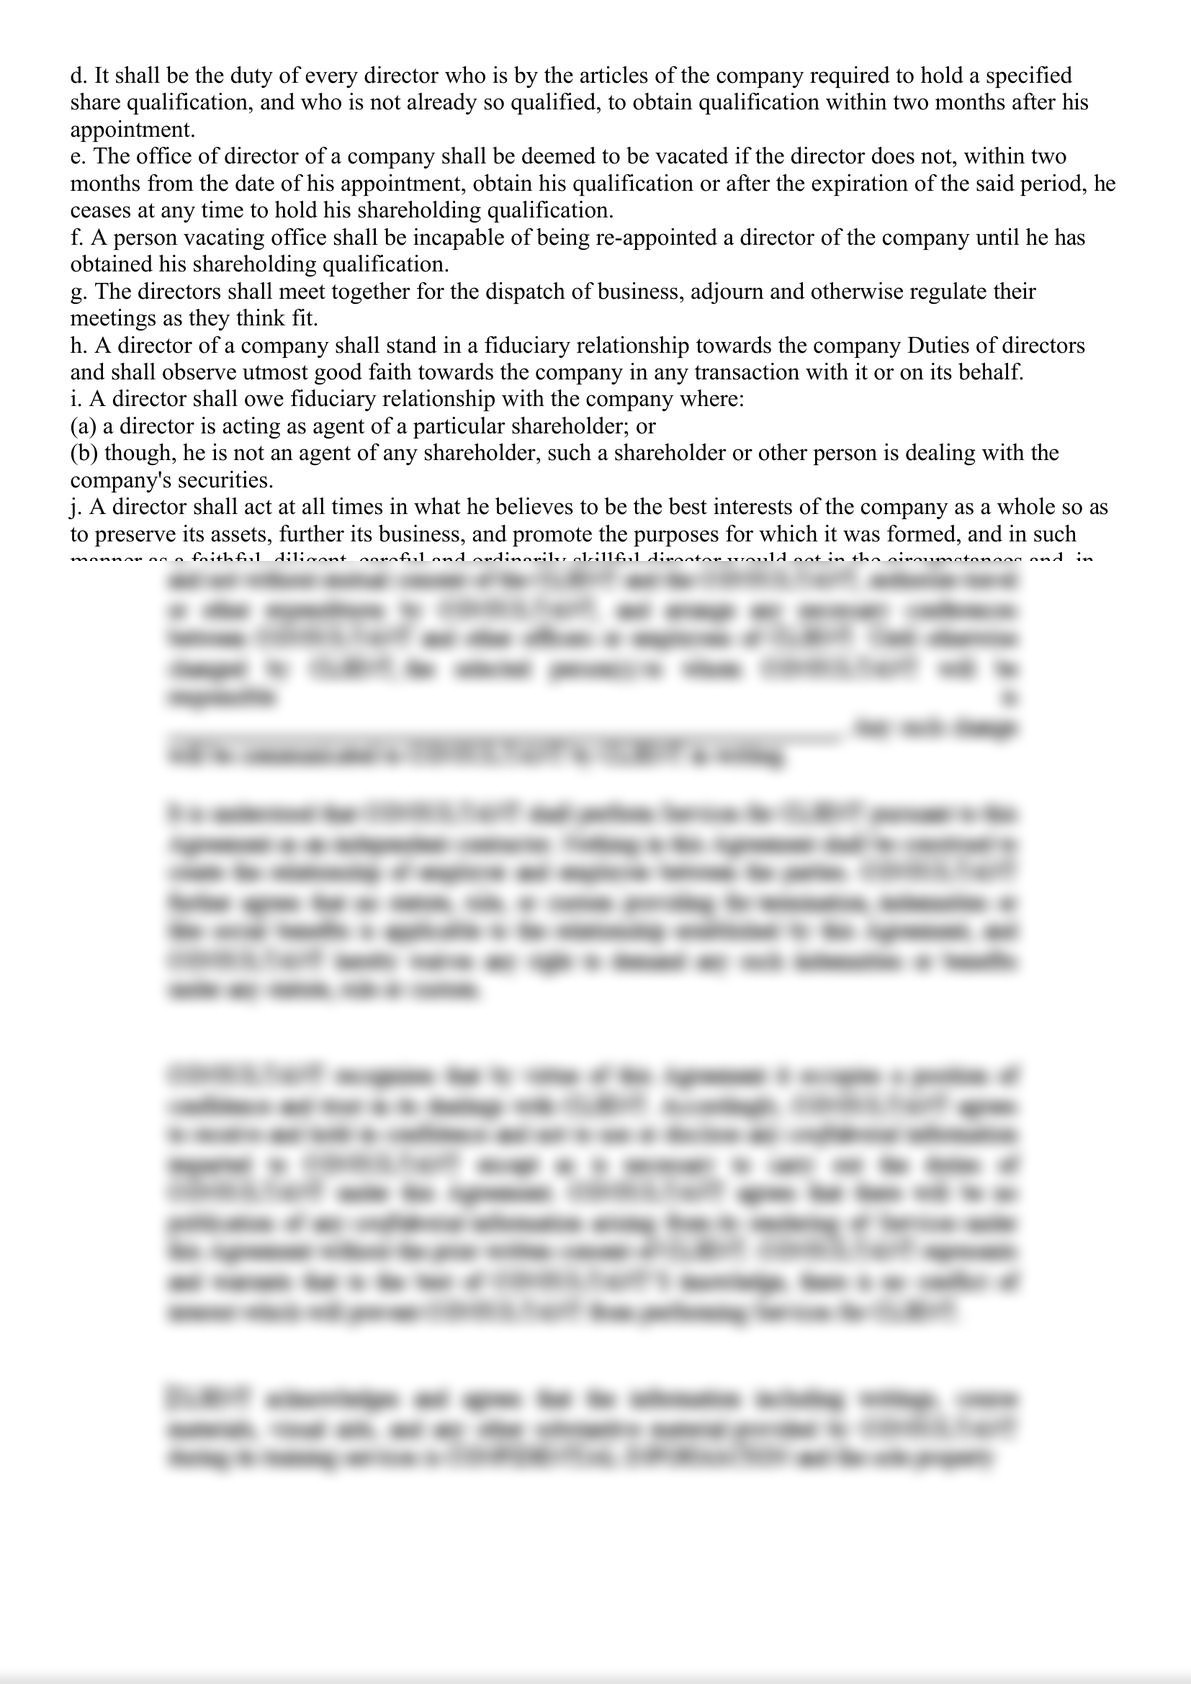 Amended Shareholders Agreement-2